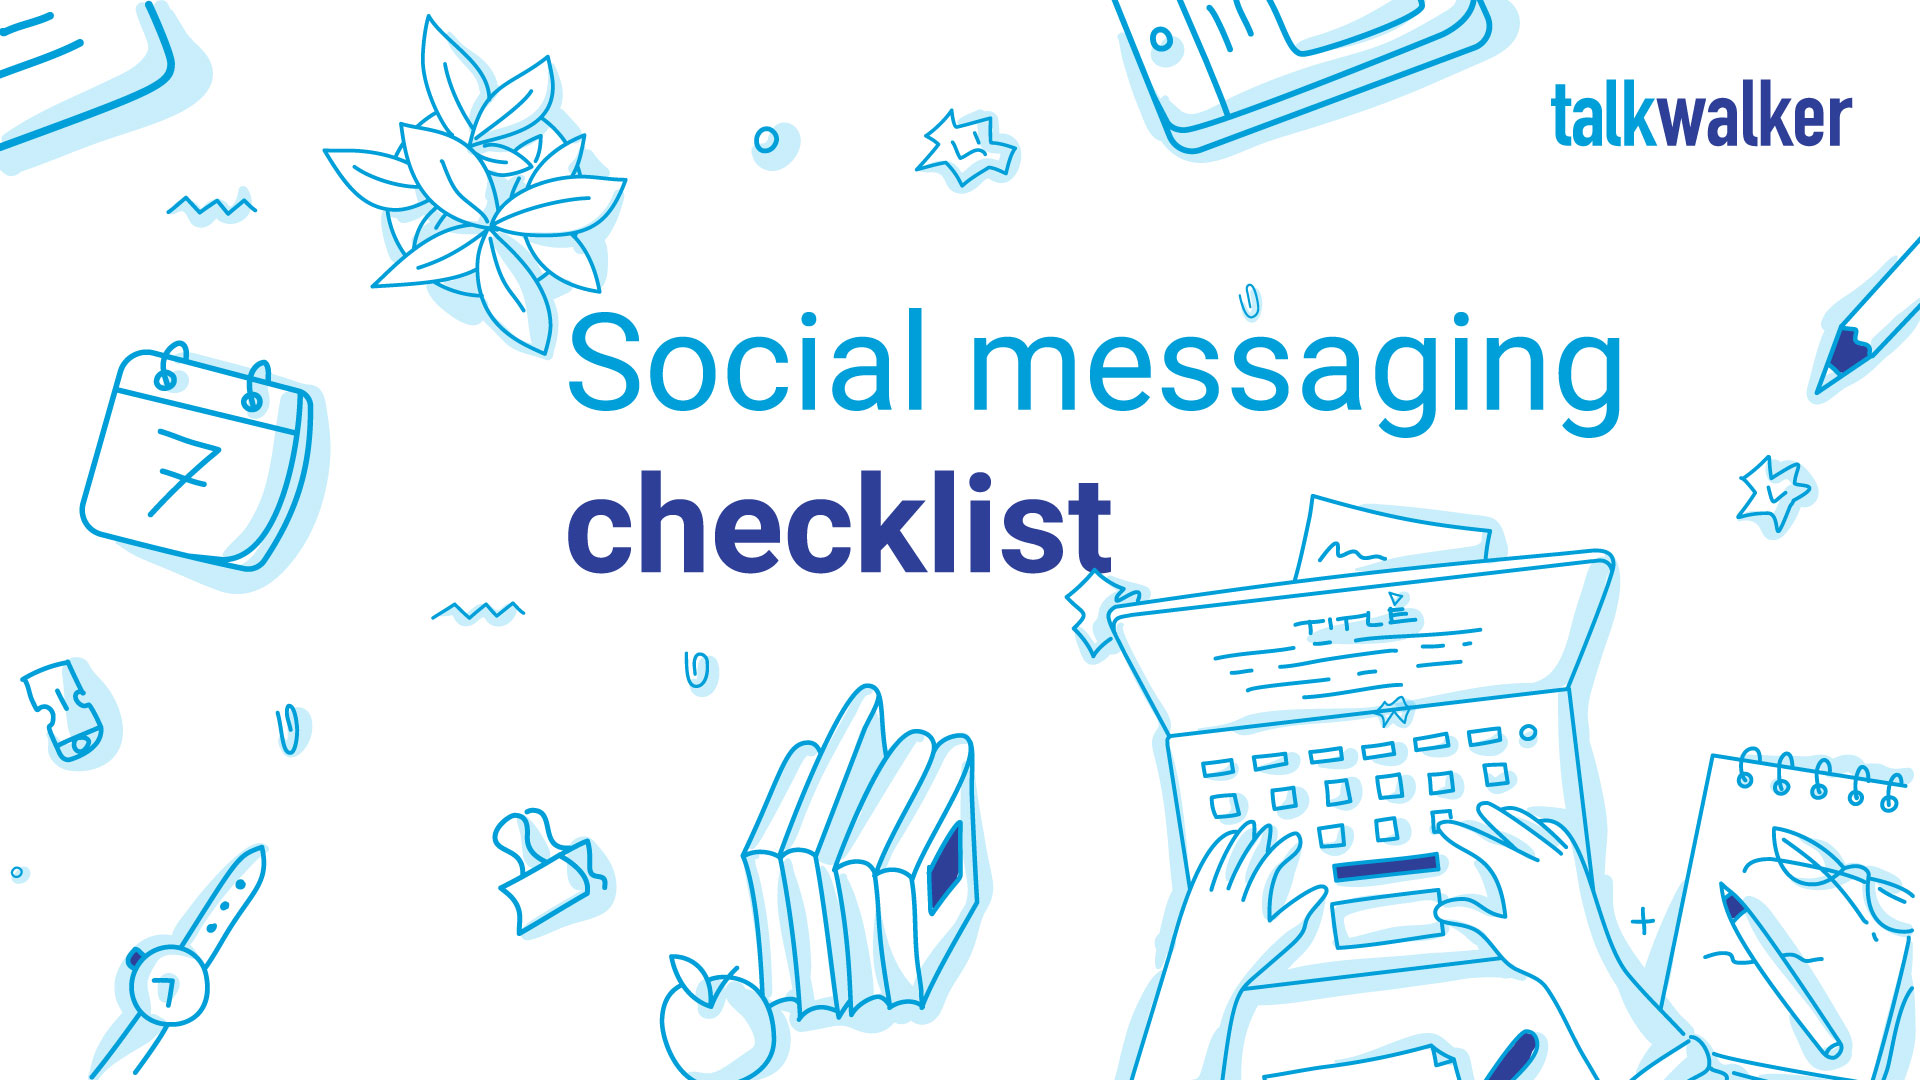 Social media messaging checklist